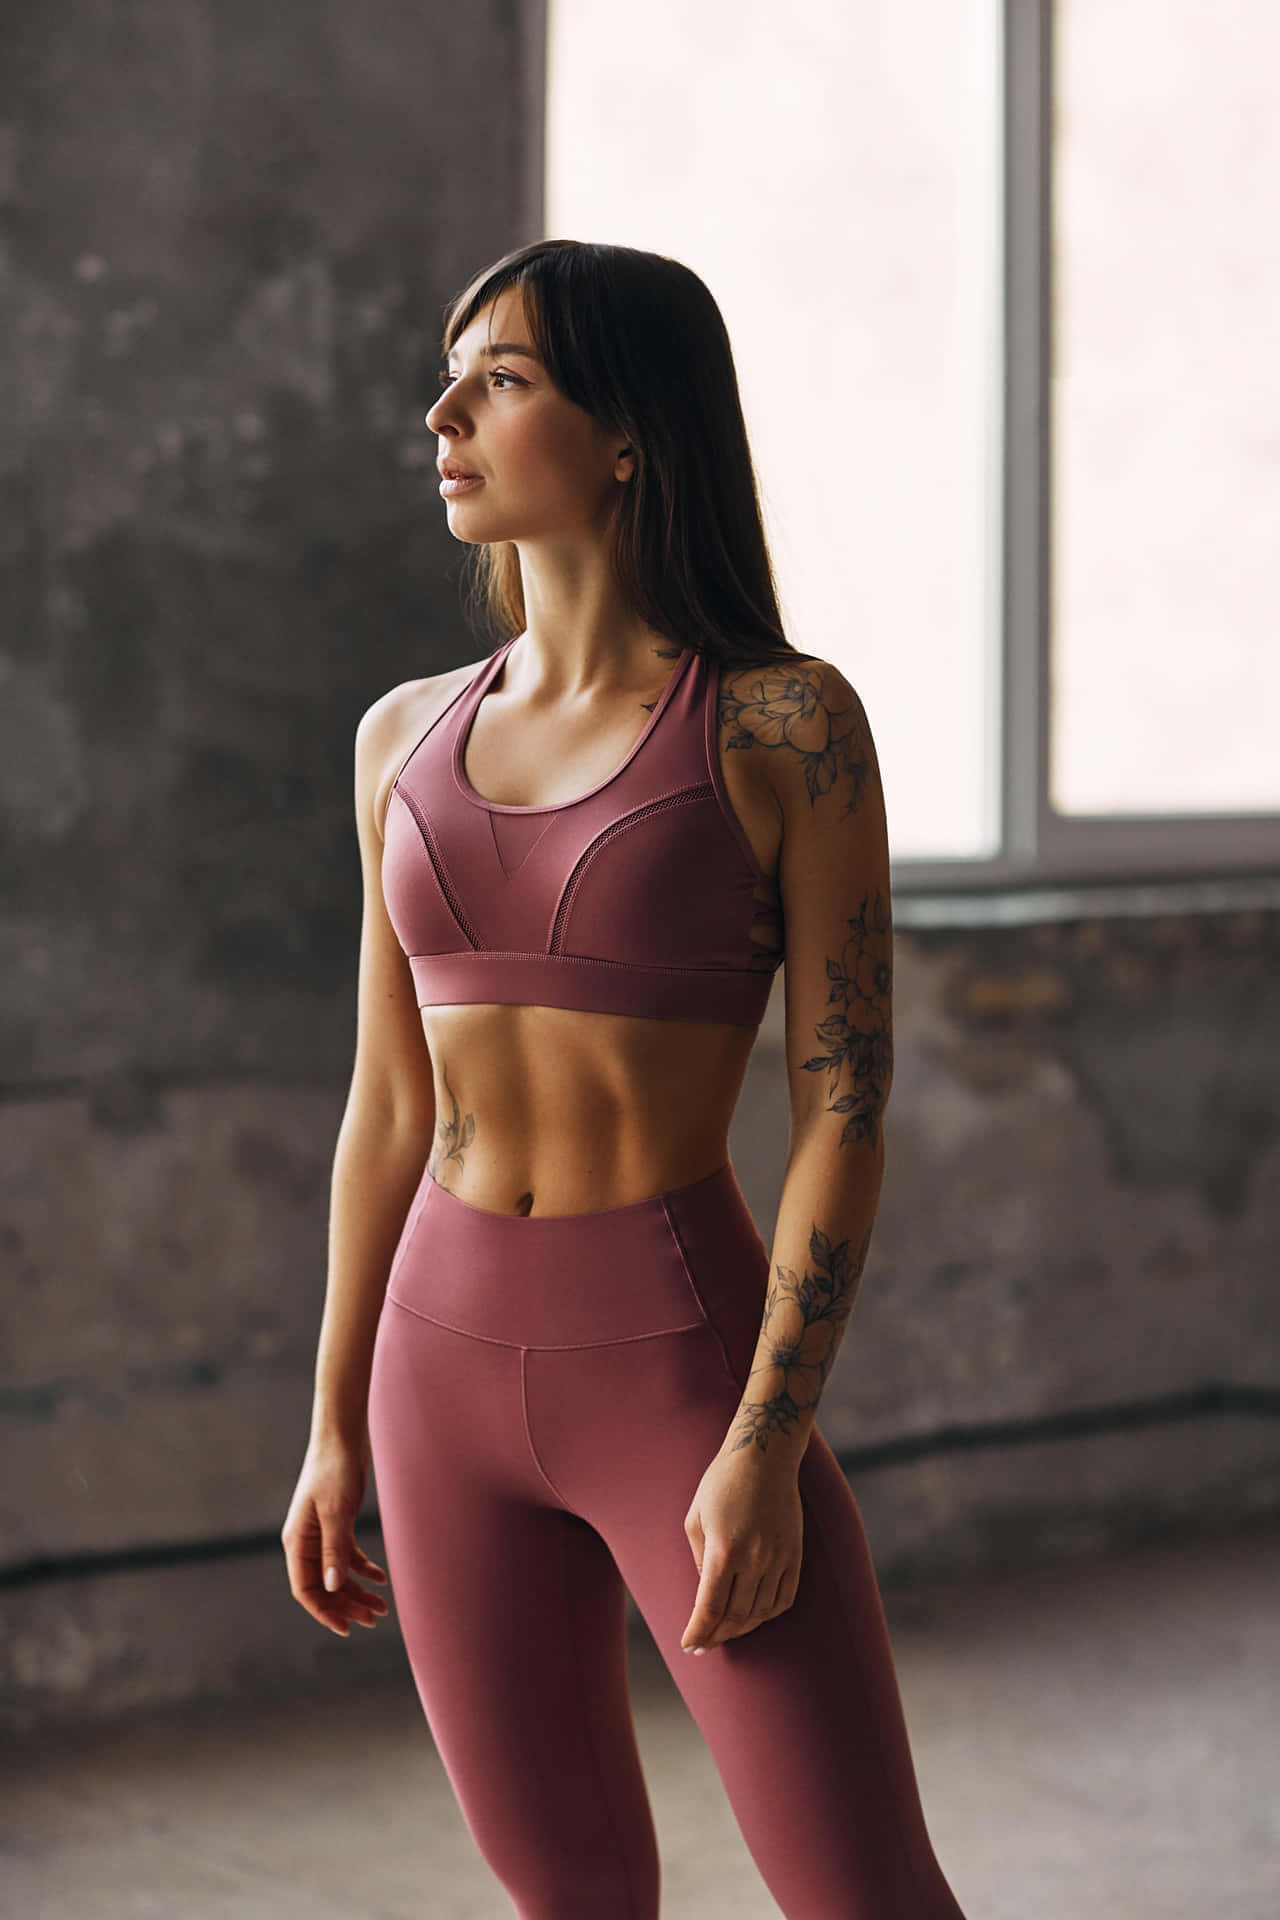 Fitness Model In Athleisure Wear Wallpaper